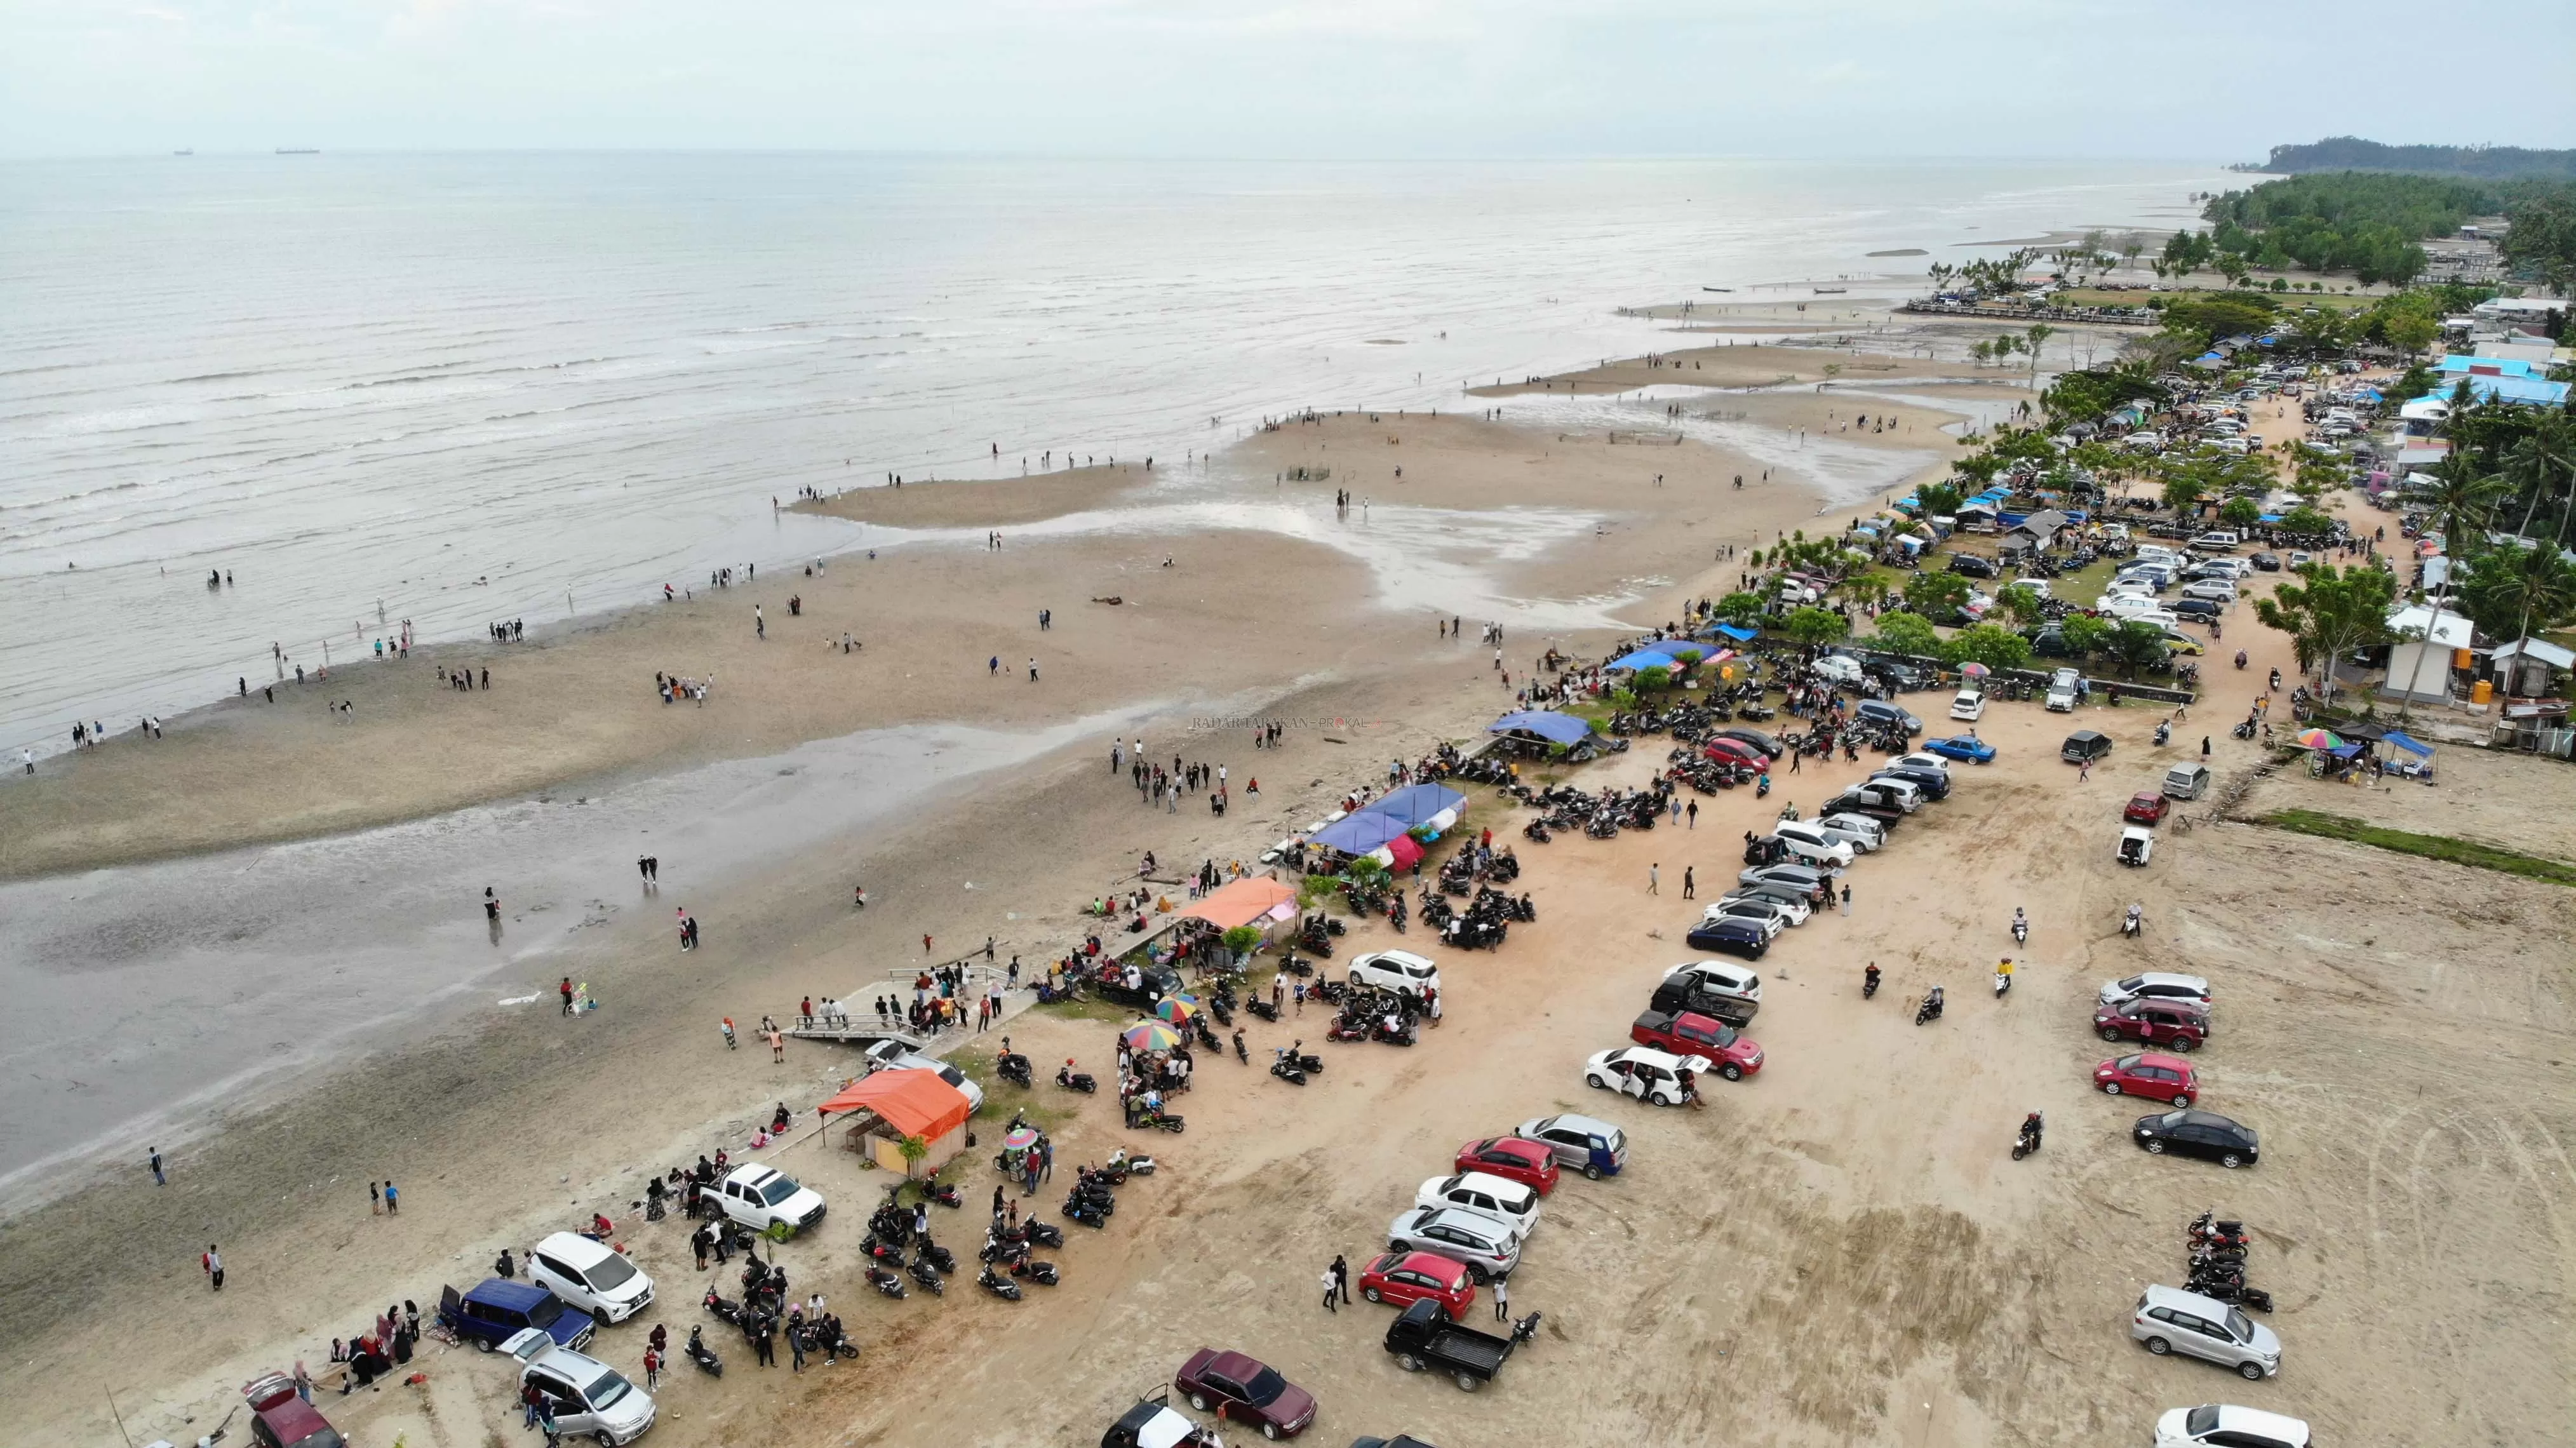 PATUT DIKEMBANGKAN: Kawasan wisata Pantai Amal rencananya akan dibenahi pemerintah dengan cara menawarkannya ke investor.